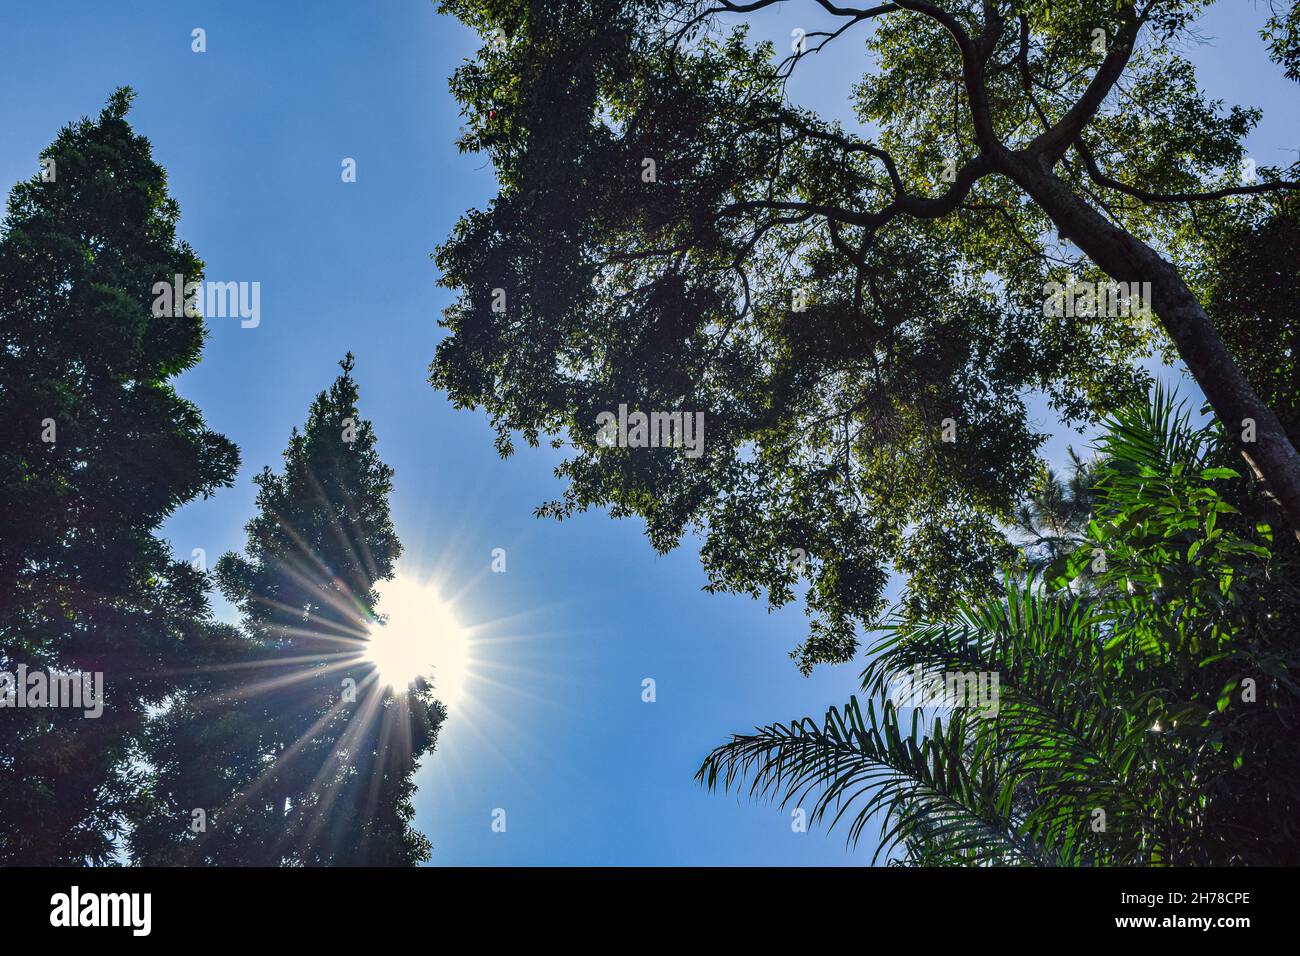 El sol y el cielo azul detrás de la imagen de los árboles. Foto de stock